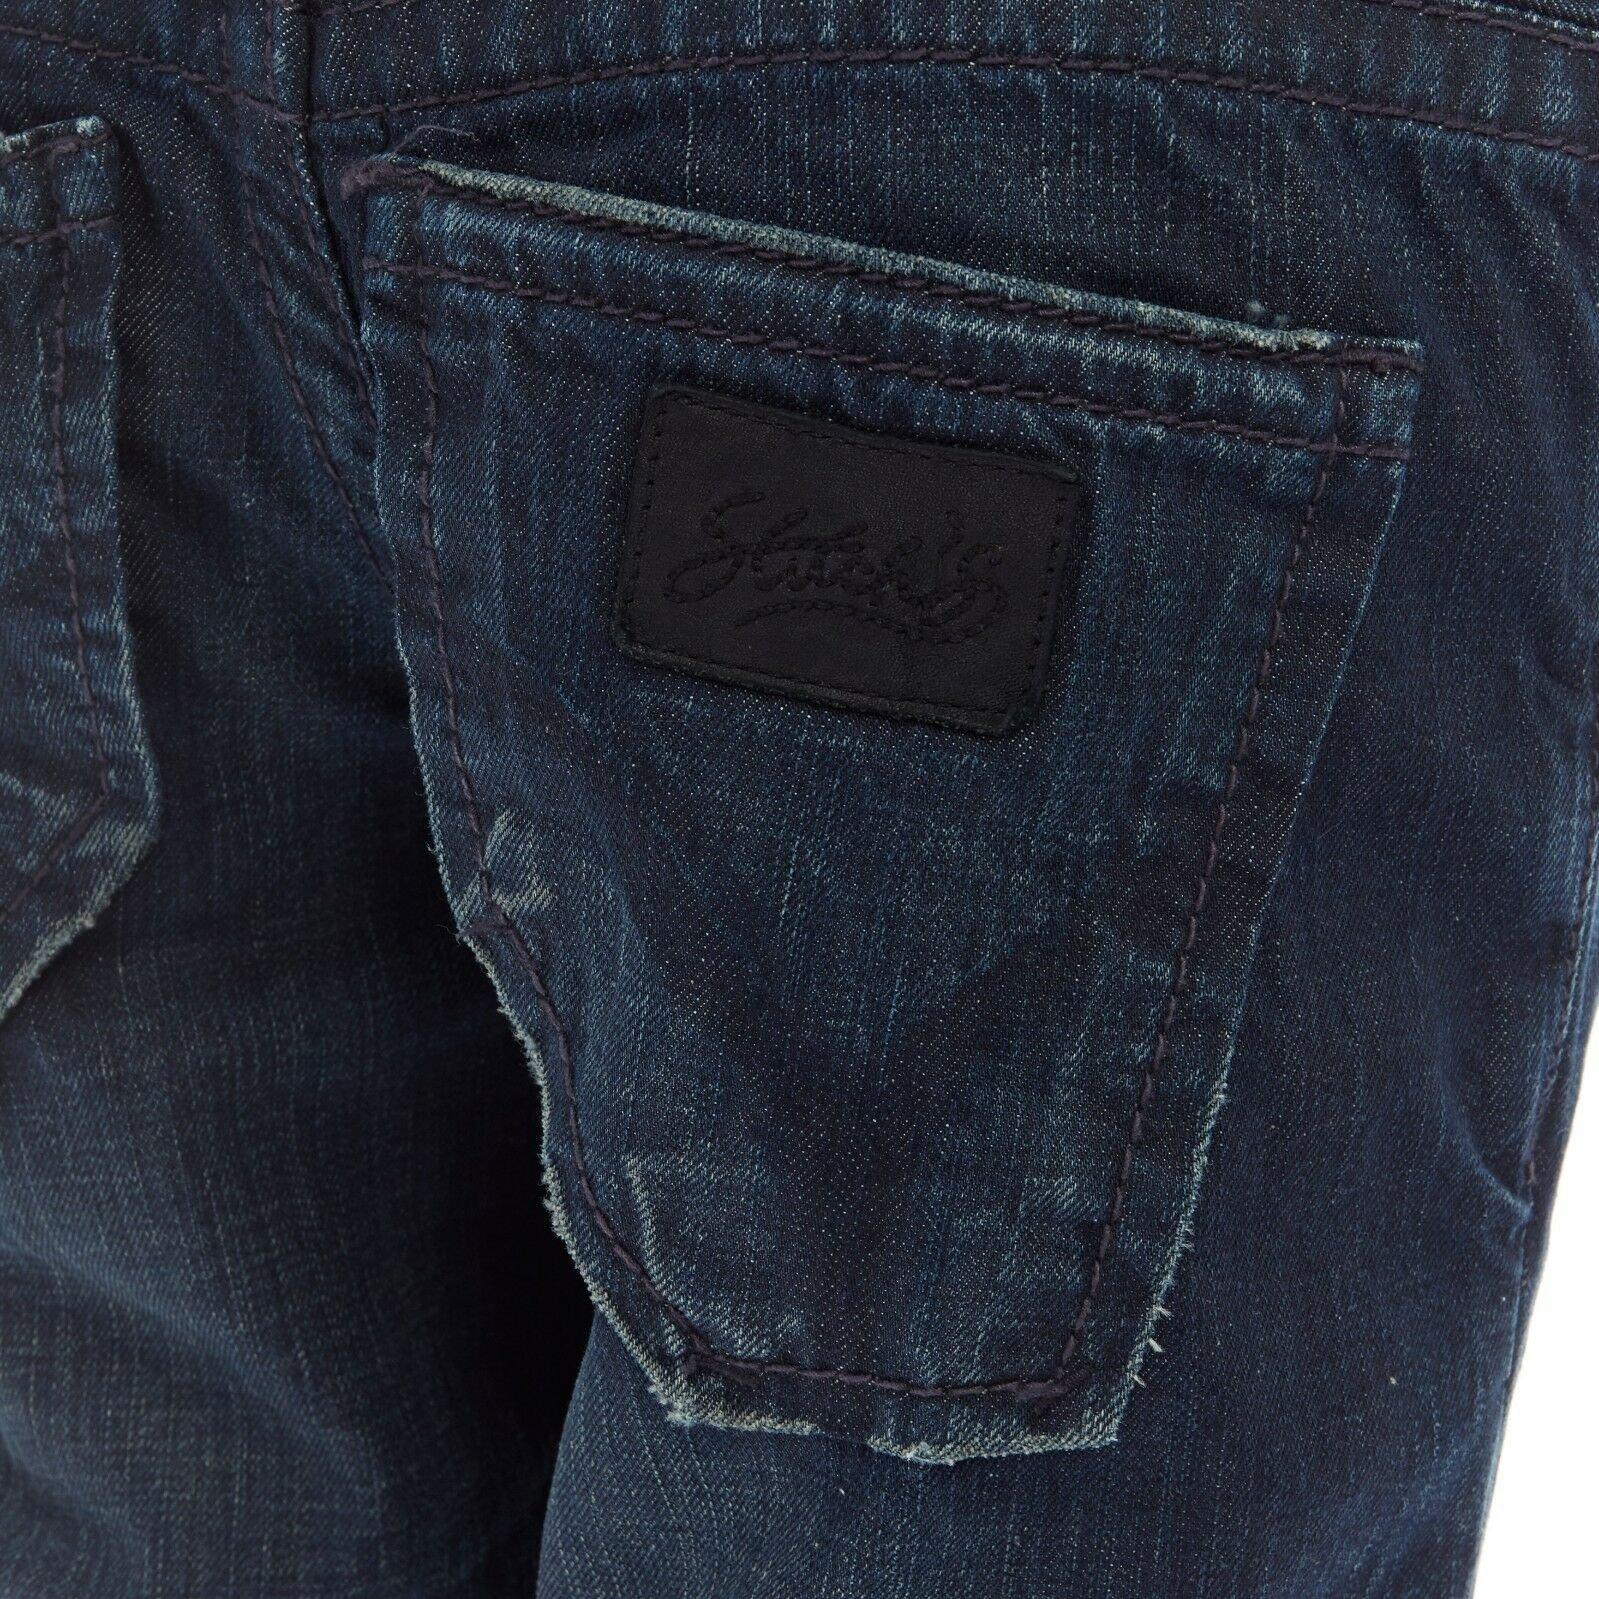 STITCH'S Black Label dark washed denim straight leg jeans 29